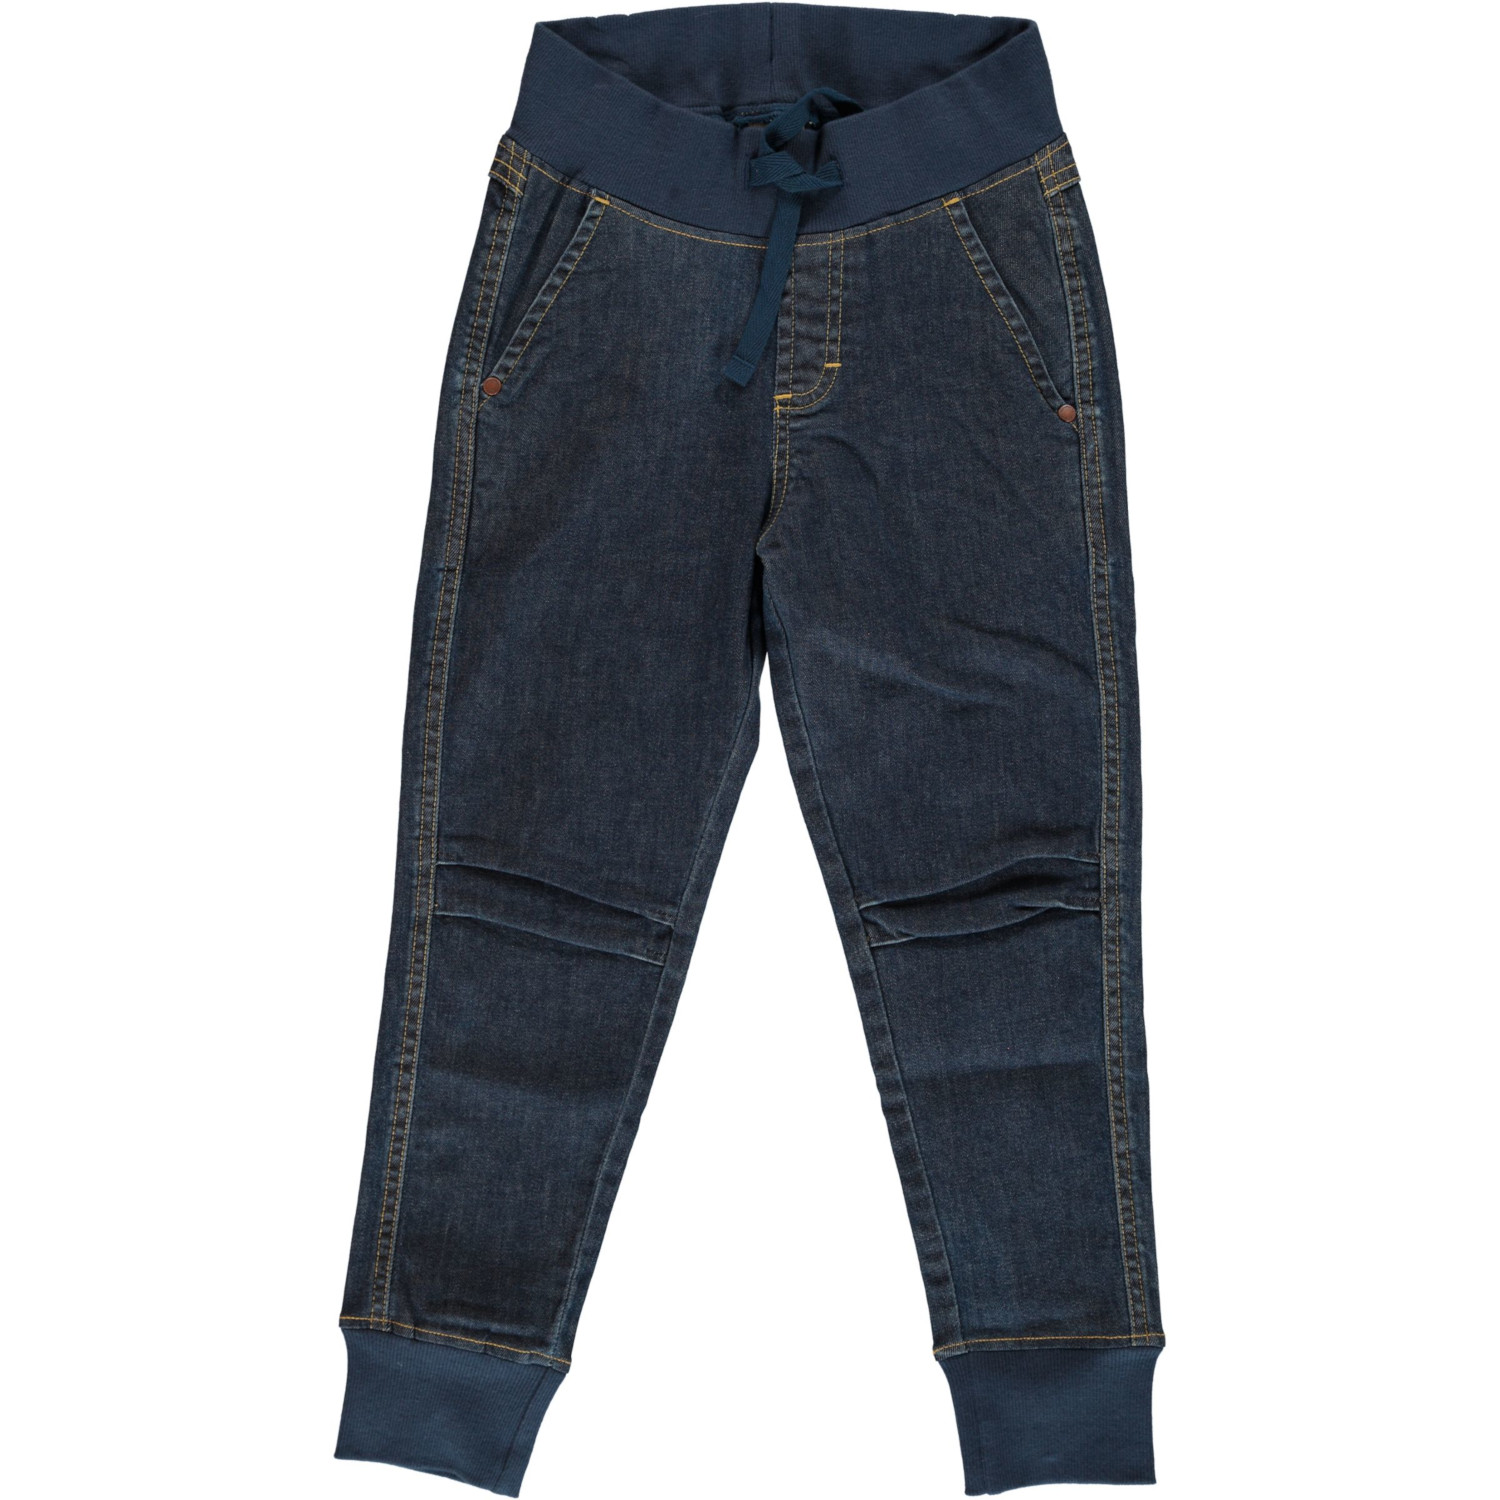 Pantaloni Jogger Denim per bambino in cotone biologico_68636